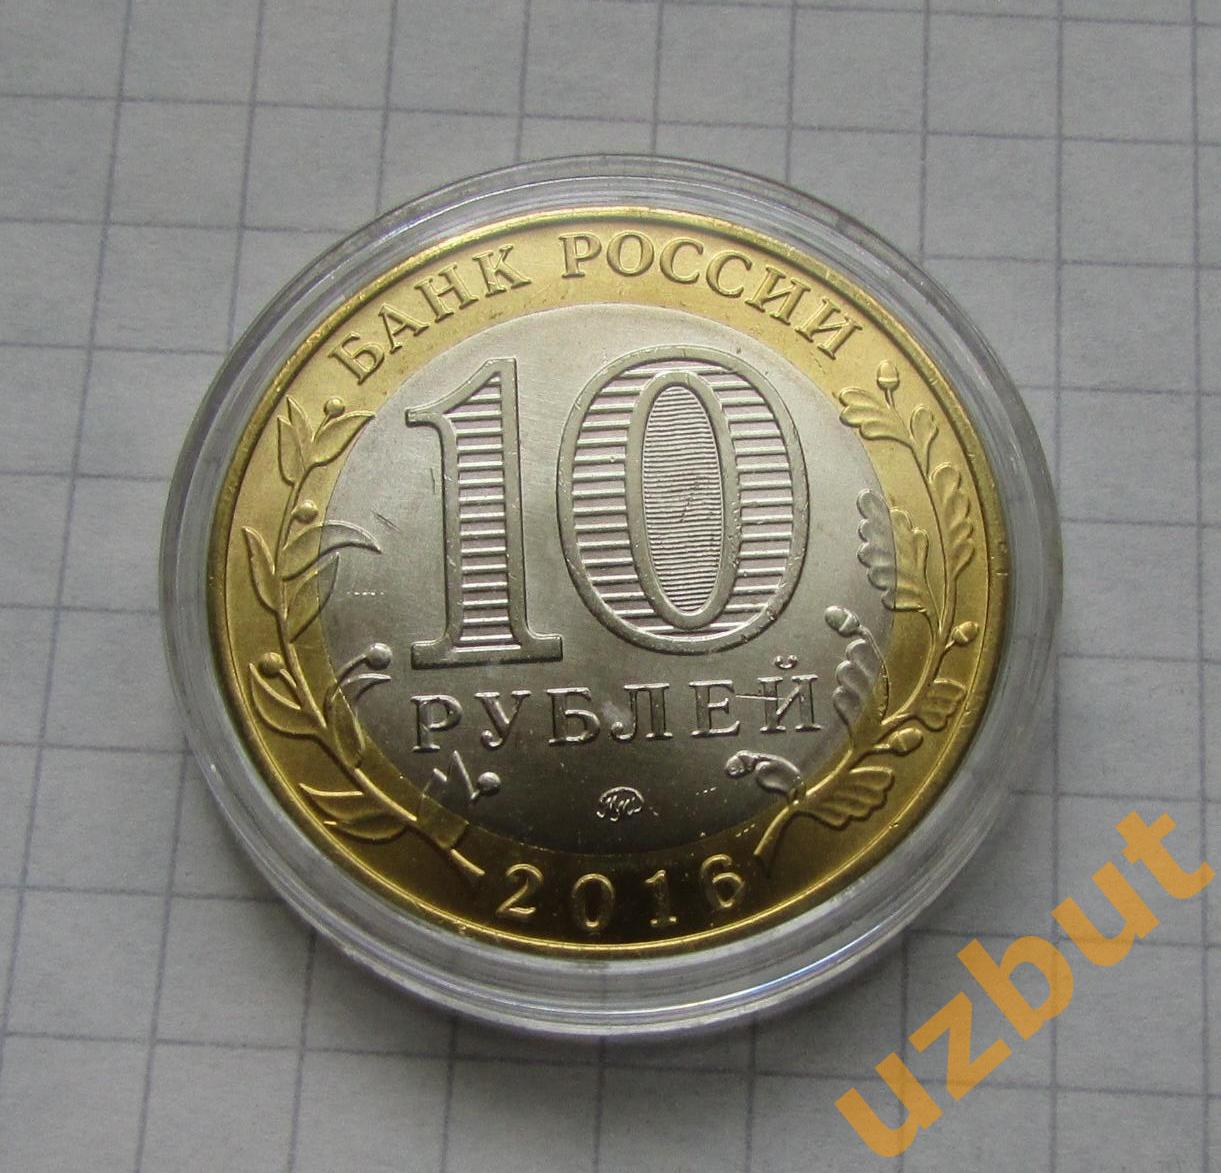 10 рублей РФ ДГР Ржев капсула 1